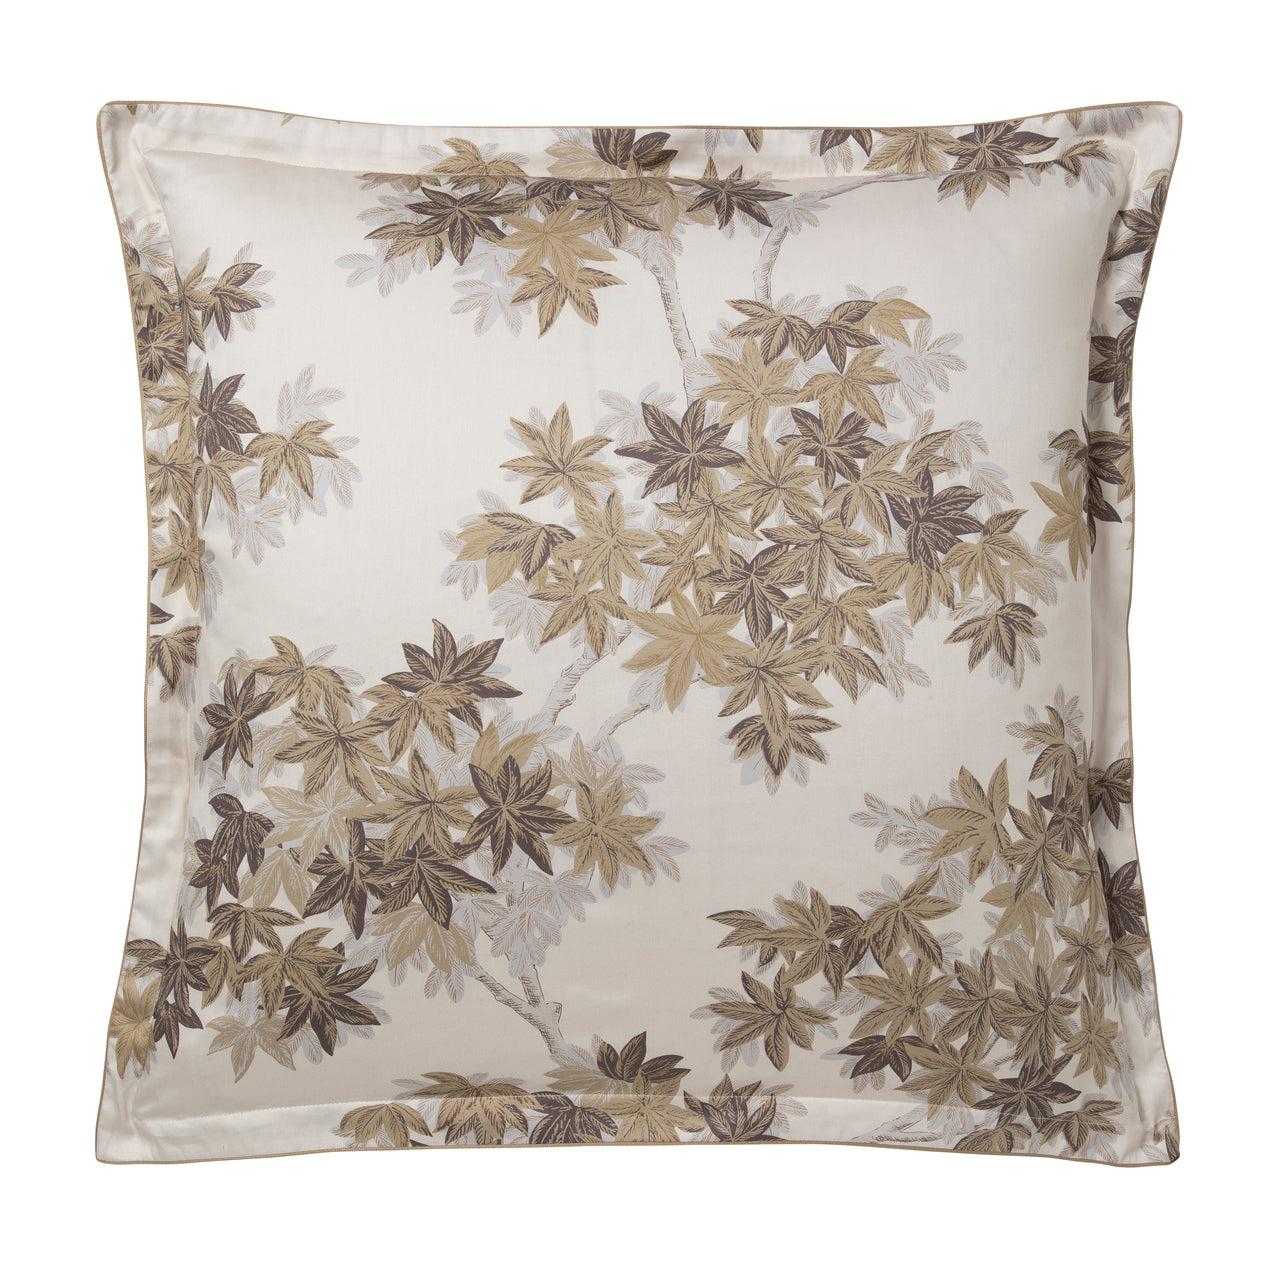 halatte pillowcases & shams by alexandre turpault on adorn.house